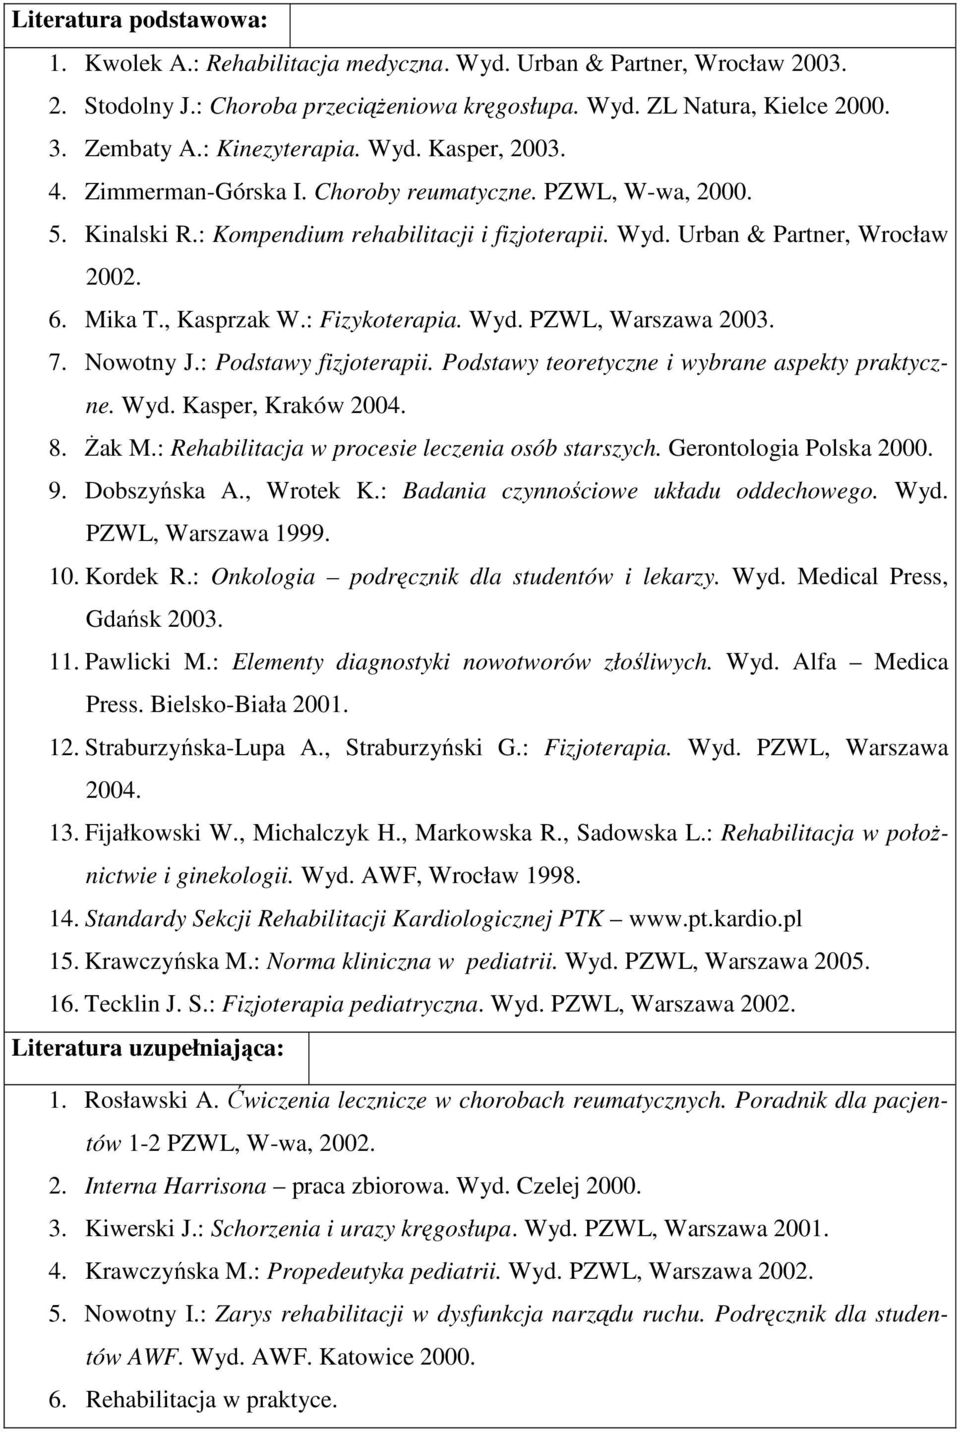 Mika T., Kasprzak W.: Fizykoterapia. Wyd. PZWL, Warszawa 2003. 7. Nowotny J.: Podstawy fizjoterapii. Podstawy teoretyczne i wybrane aspekty praktyczne. Wyd. Kasper, Kraków 2004. 8. Żak M.